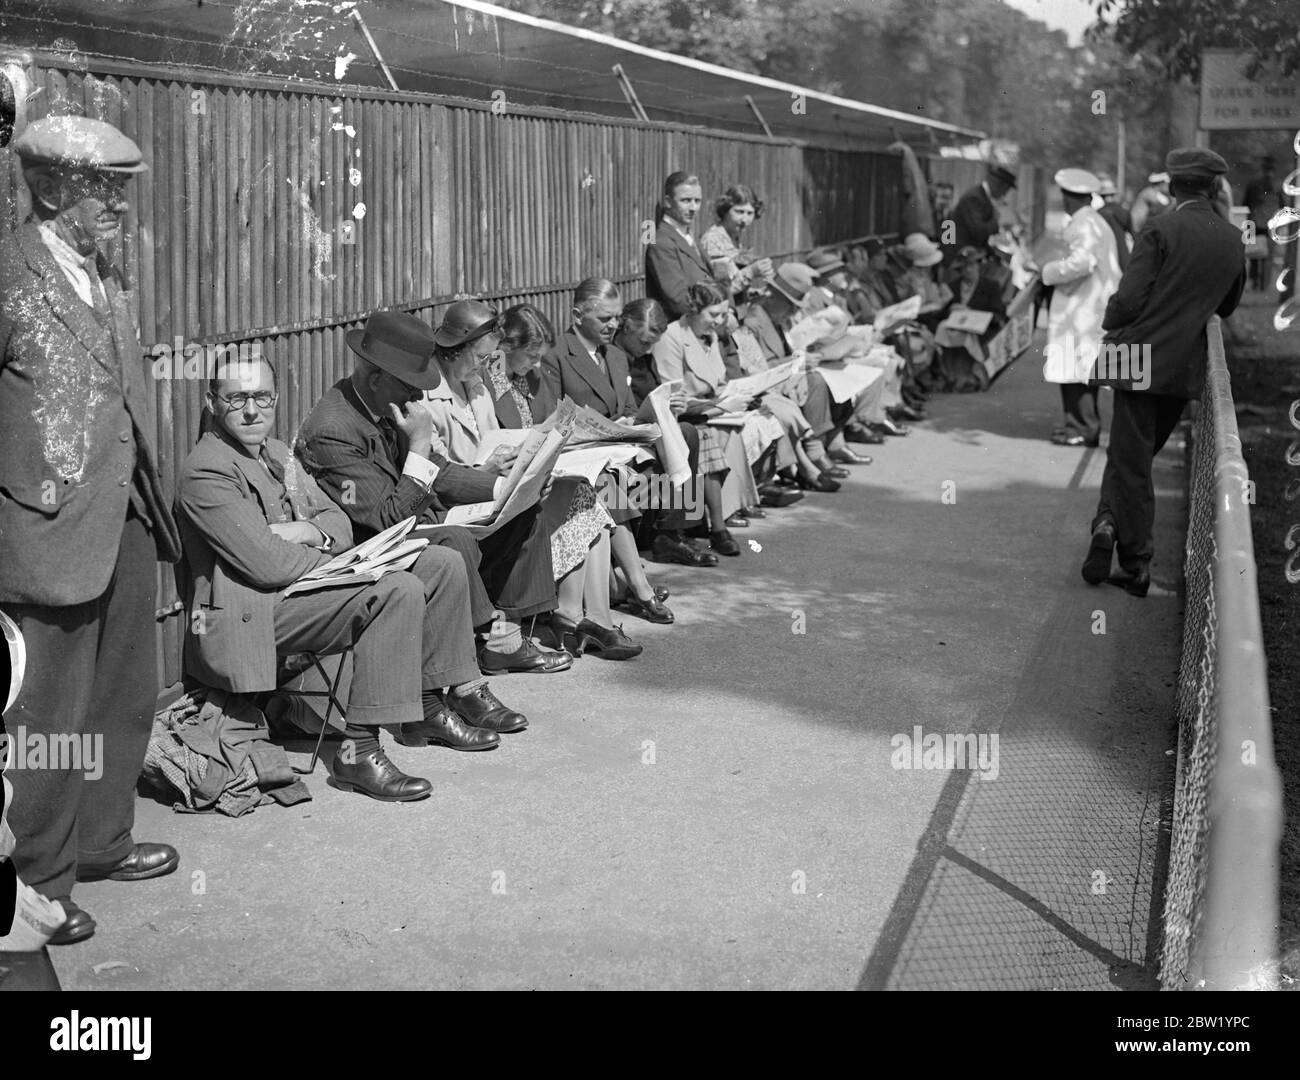 Une grande file d'attente à Wimbledon pour la première journée des femmes. Une longue file d'amateurs de tennis a attendu à Wimbledon pour l'admission au deuxième jour du championnat, alors que les femmes seraient en action. Des spectacles photo, la foule attend l'entrée à Wimbledon. 22 juin 1937 Banque D'Images